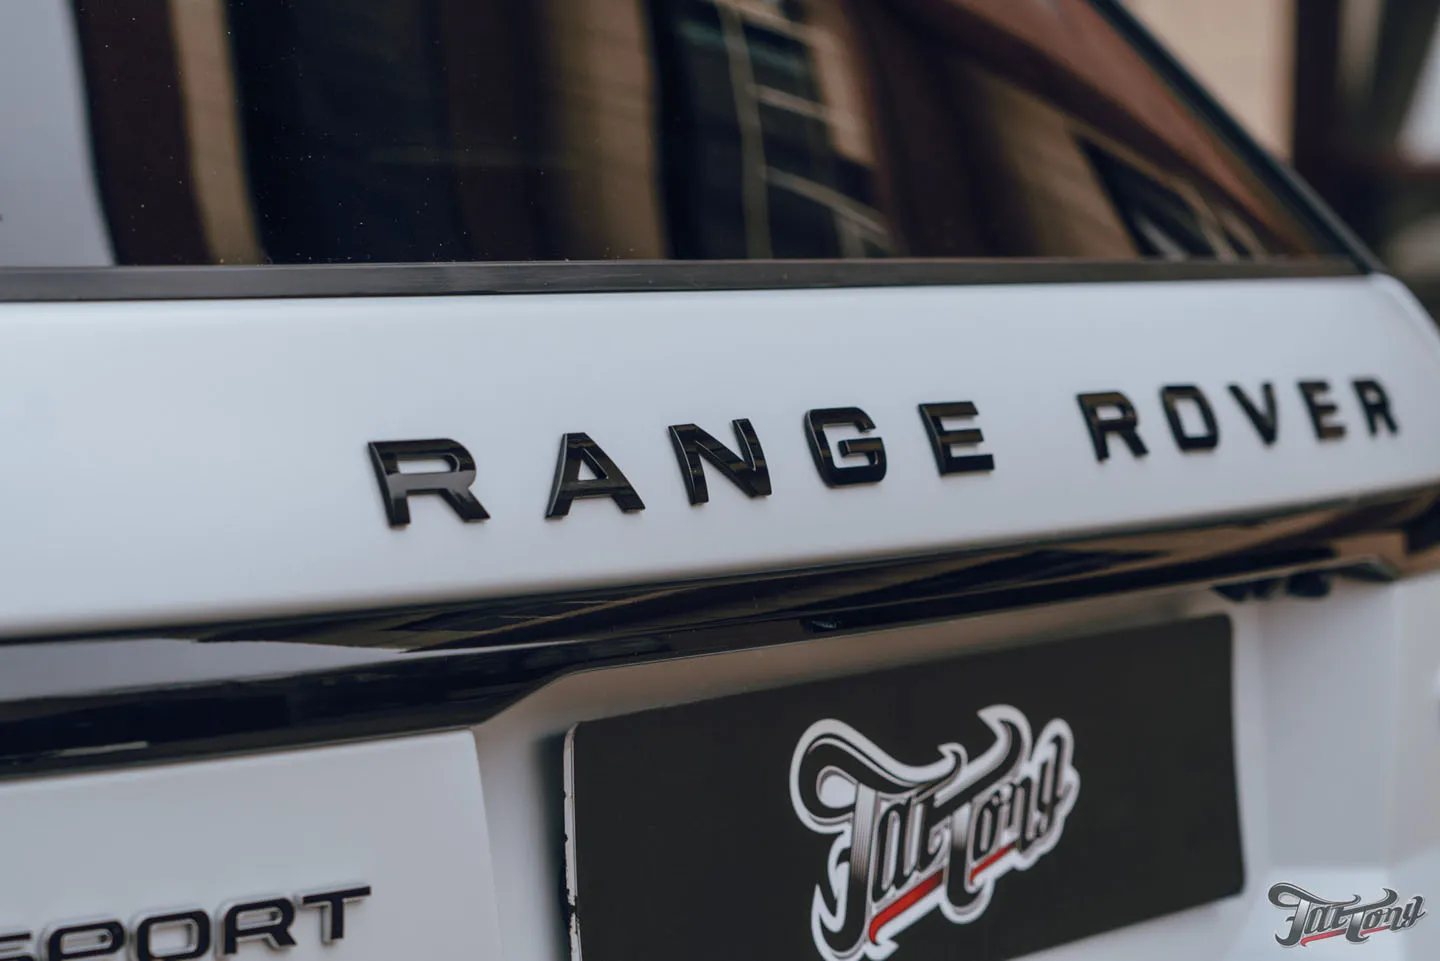 Оклейка Range Rover Sport матовым полиуретаном